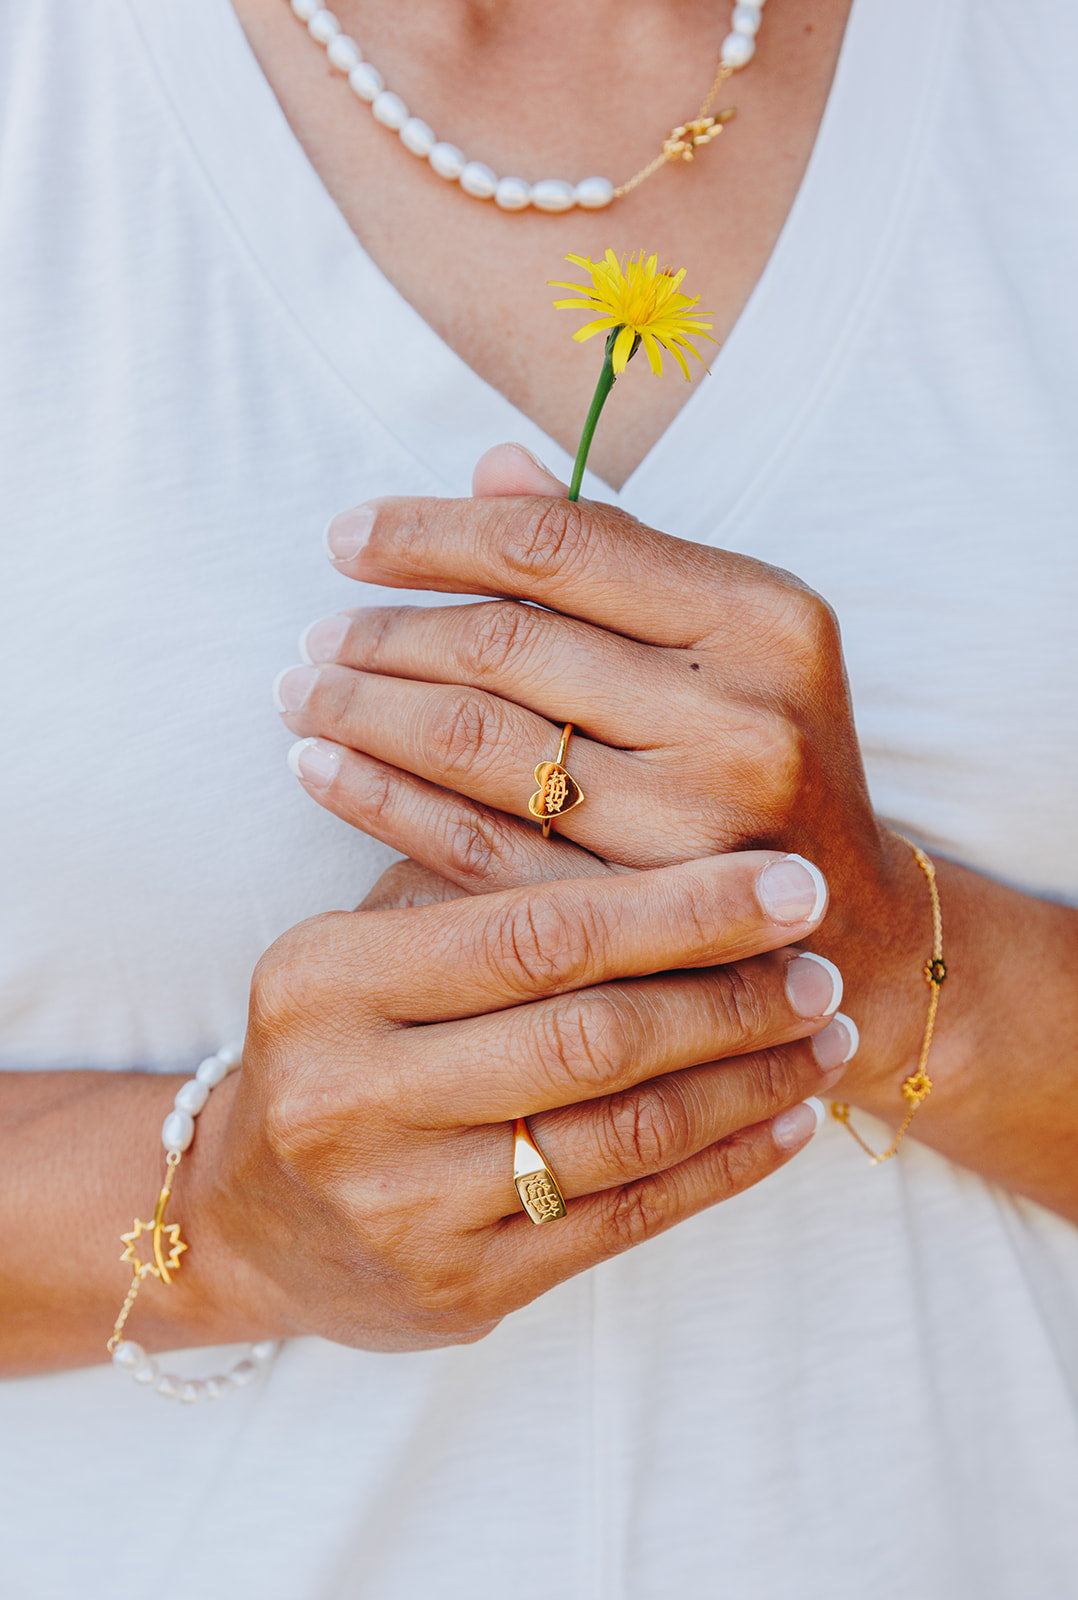 simple gold heart bahai ringstone ring holding yellow dandelion flower